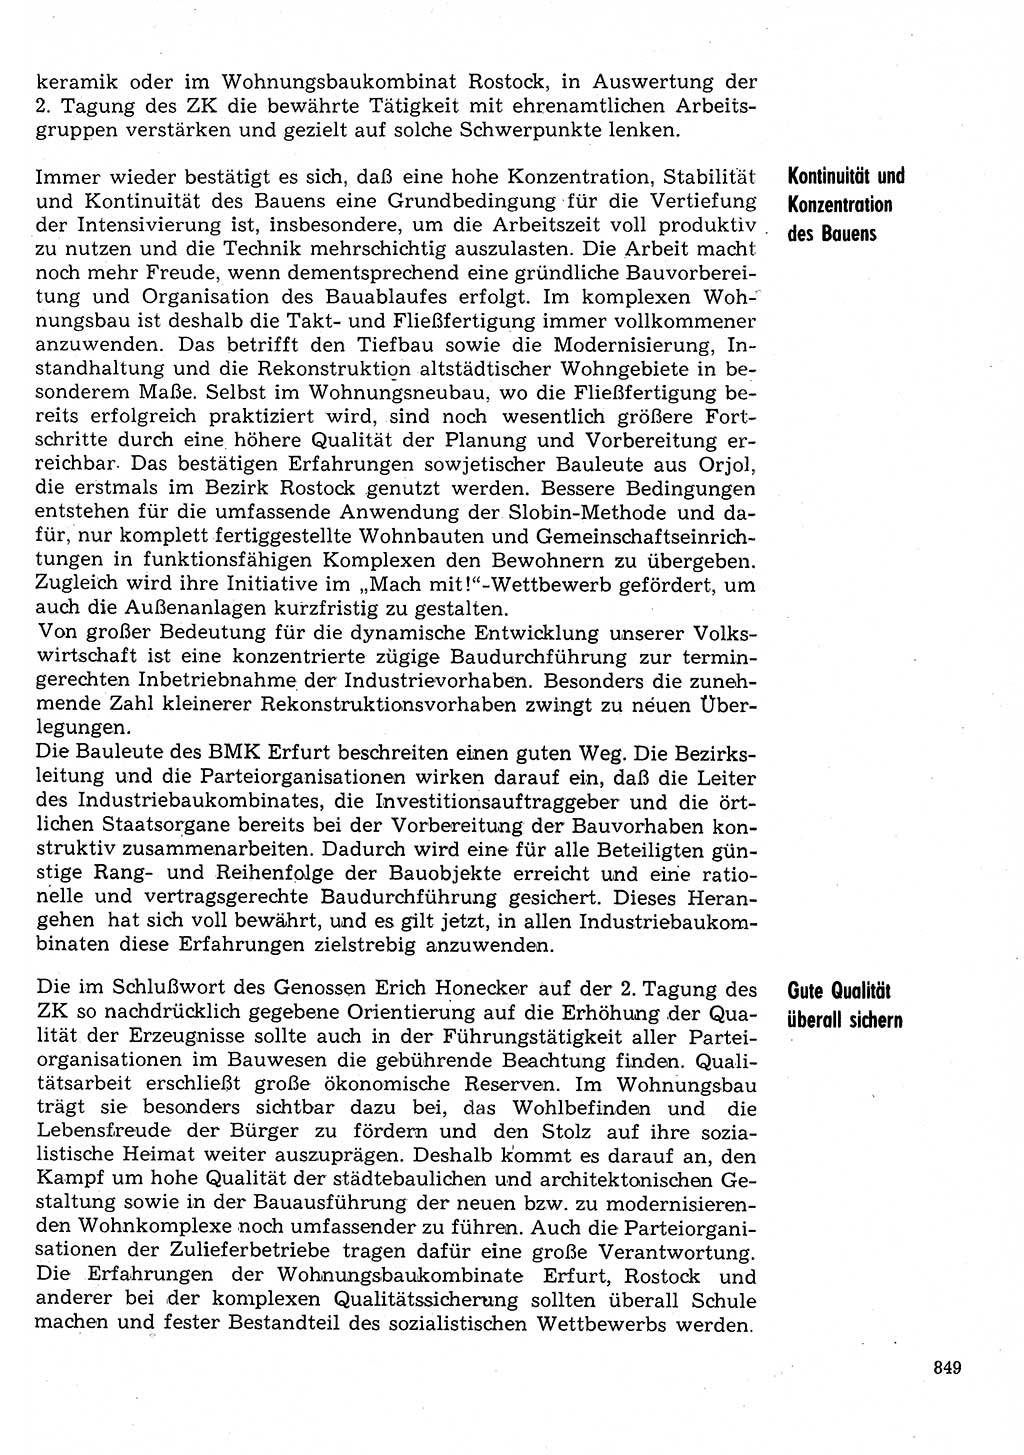 Neuer Weg (NW), Organ des Zentralkomitees (ZK) der SED (Sozialistische Einheitspartei Deutschlands) für Fragen des Parteilebens, 31. Jahrgang [Deutsche Demokratische Republik (DDR)] 1976, Seite 849 (NW ZK SED DDR 1976, S. 849)